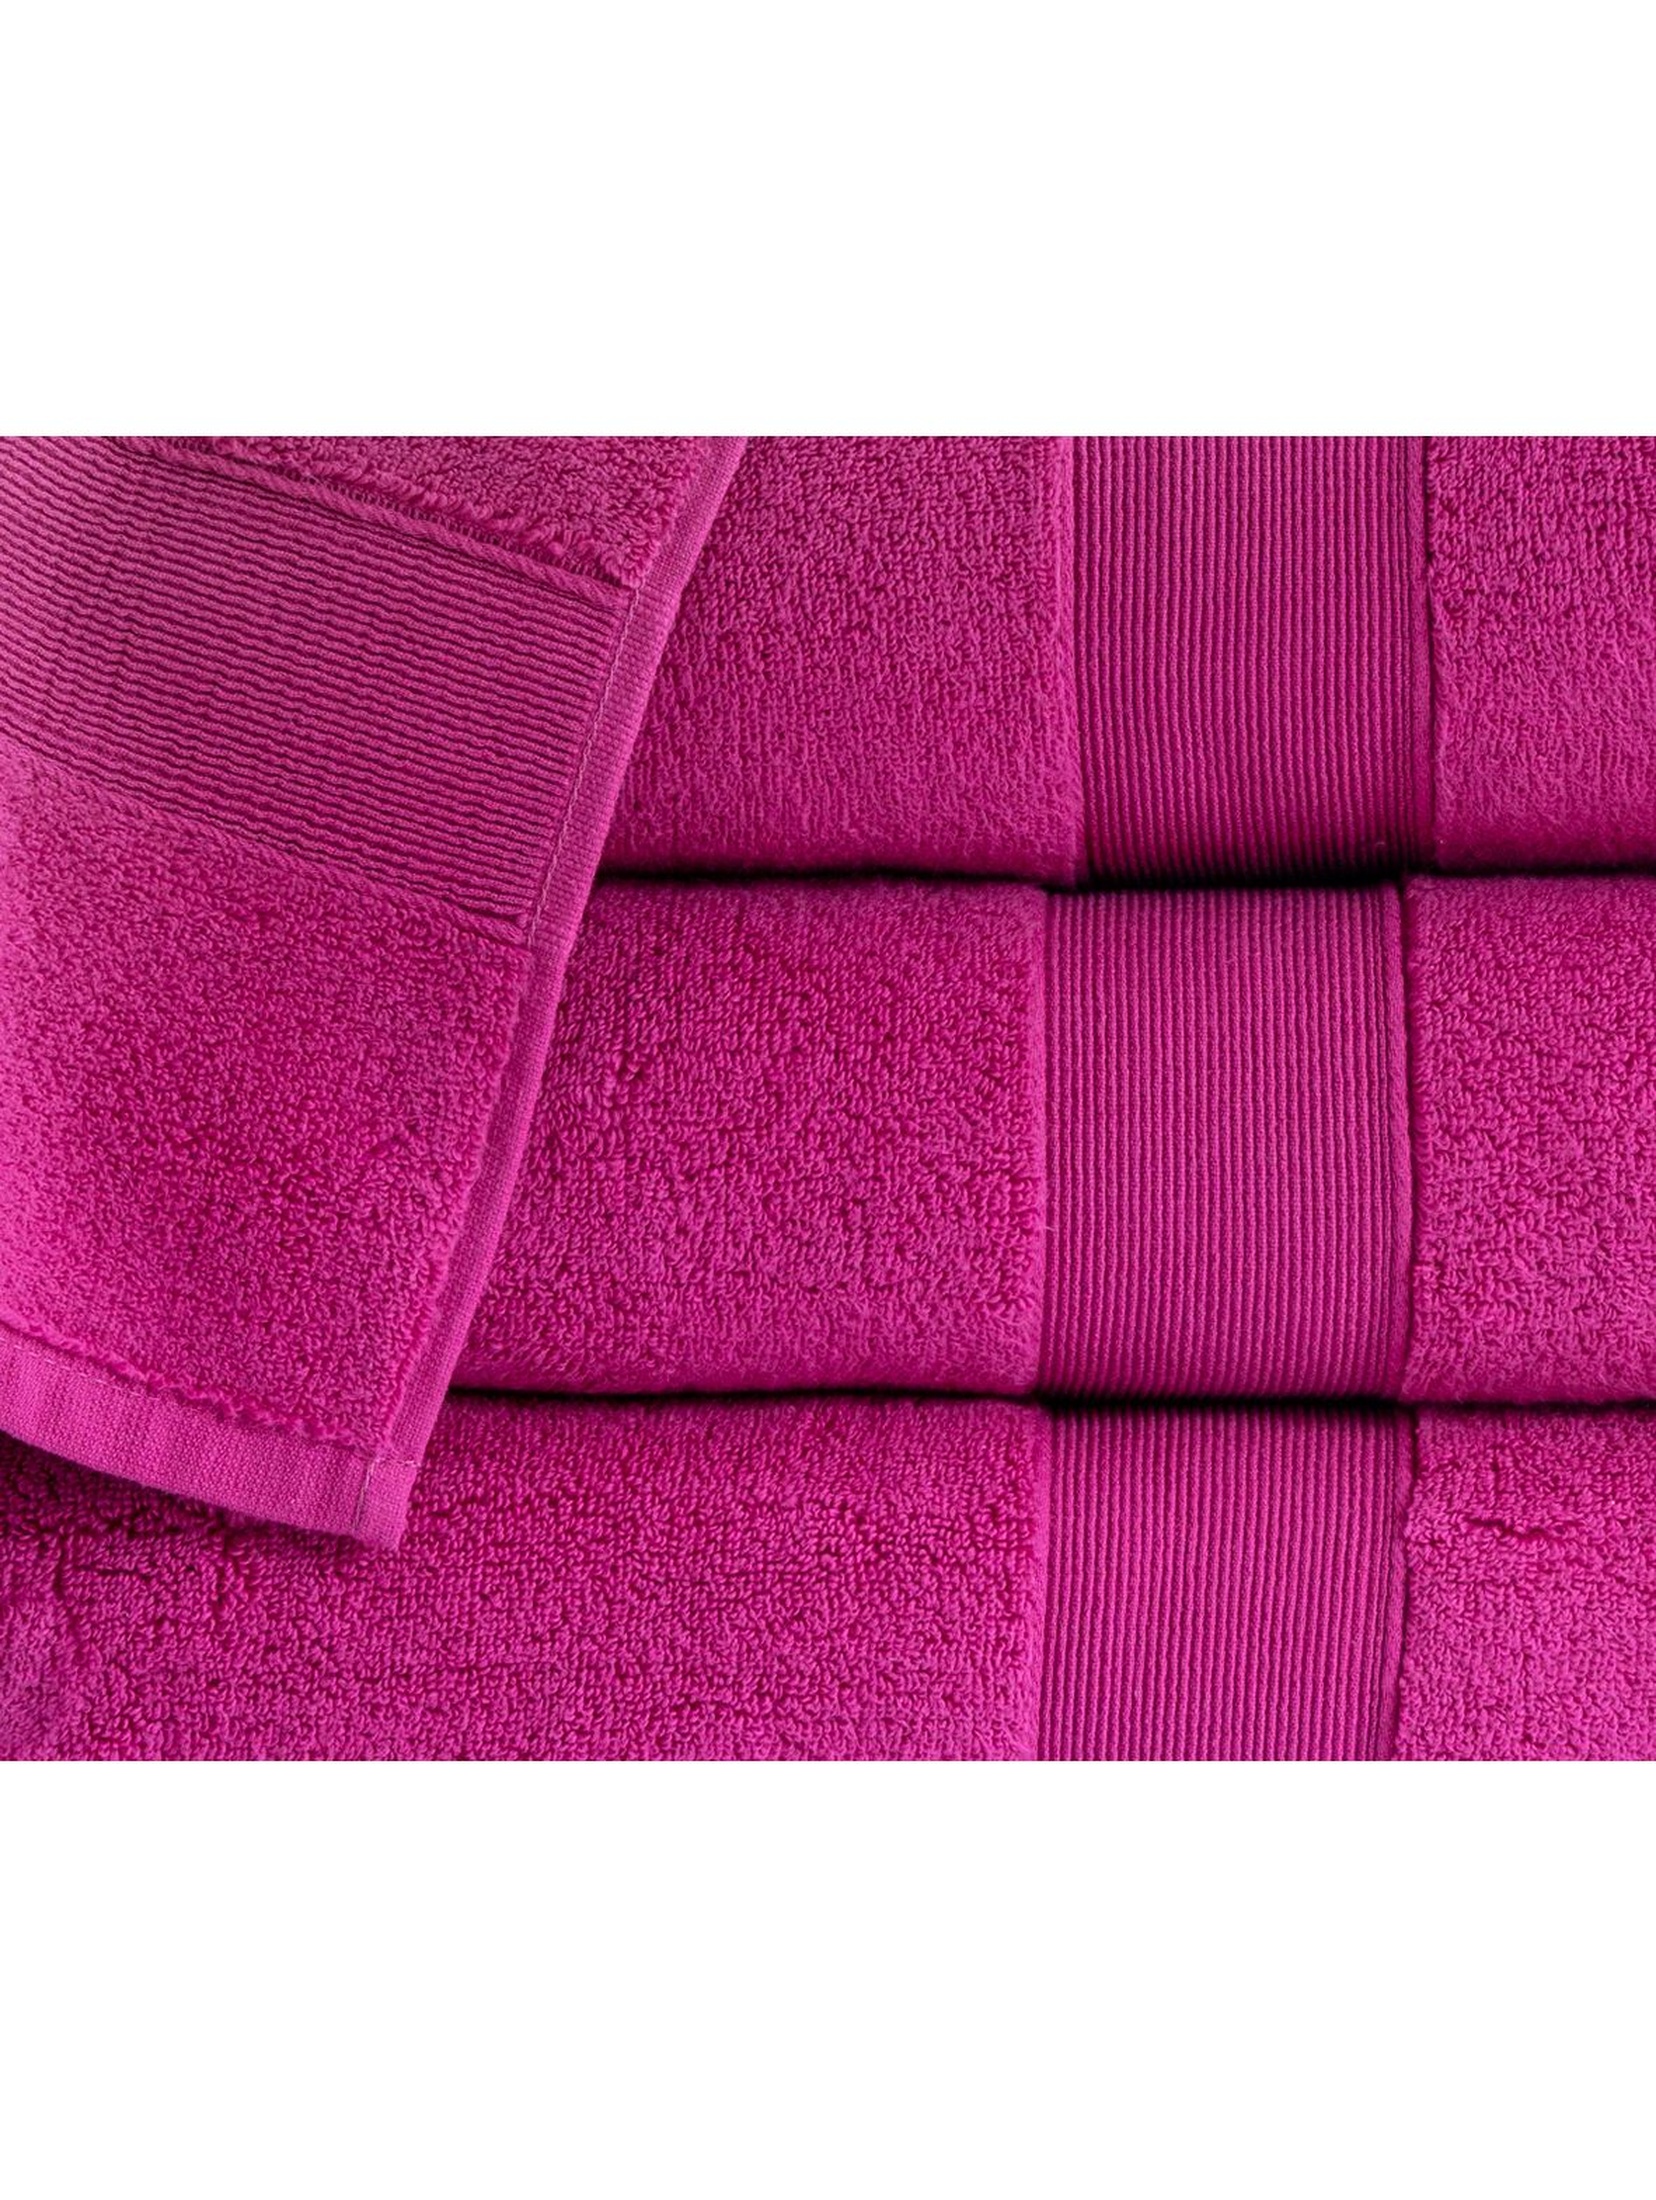 Bawełniany ręcznik ROCCO - różowy 50x90cm